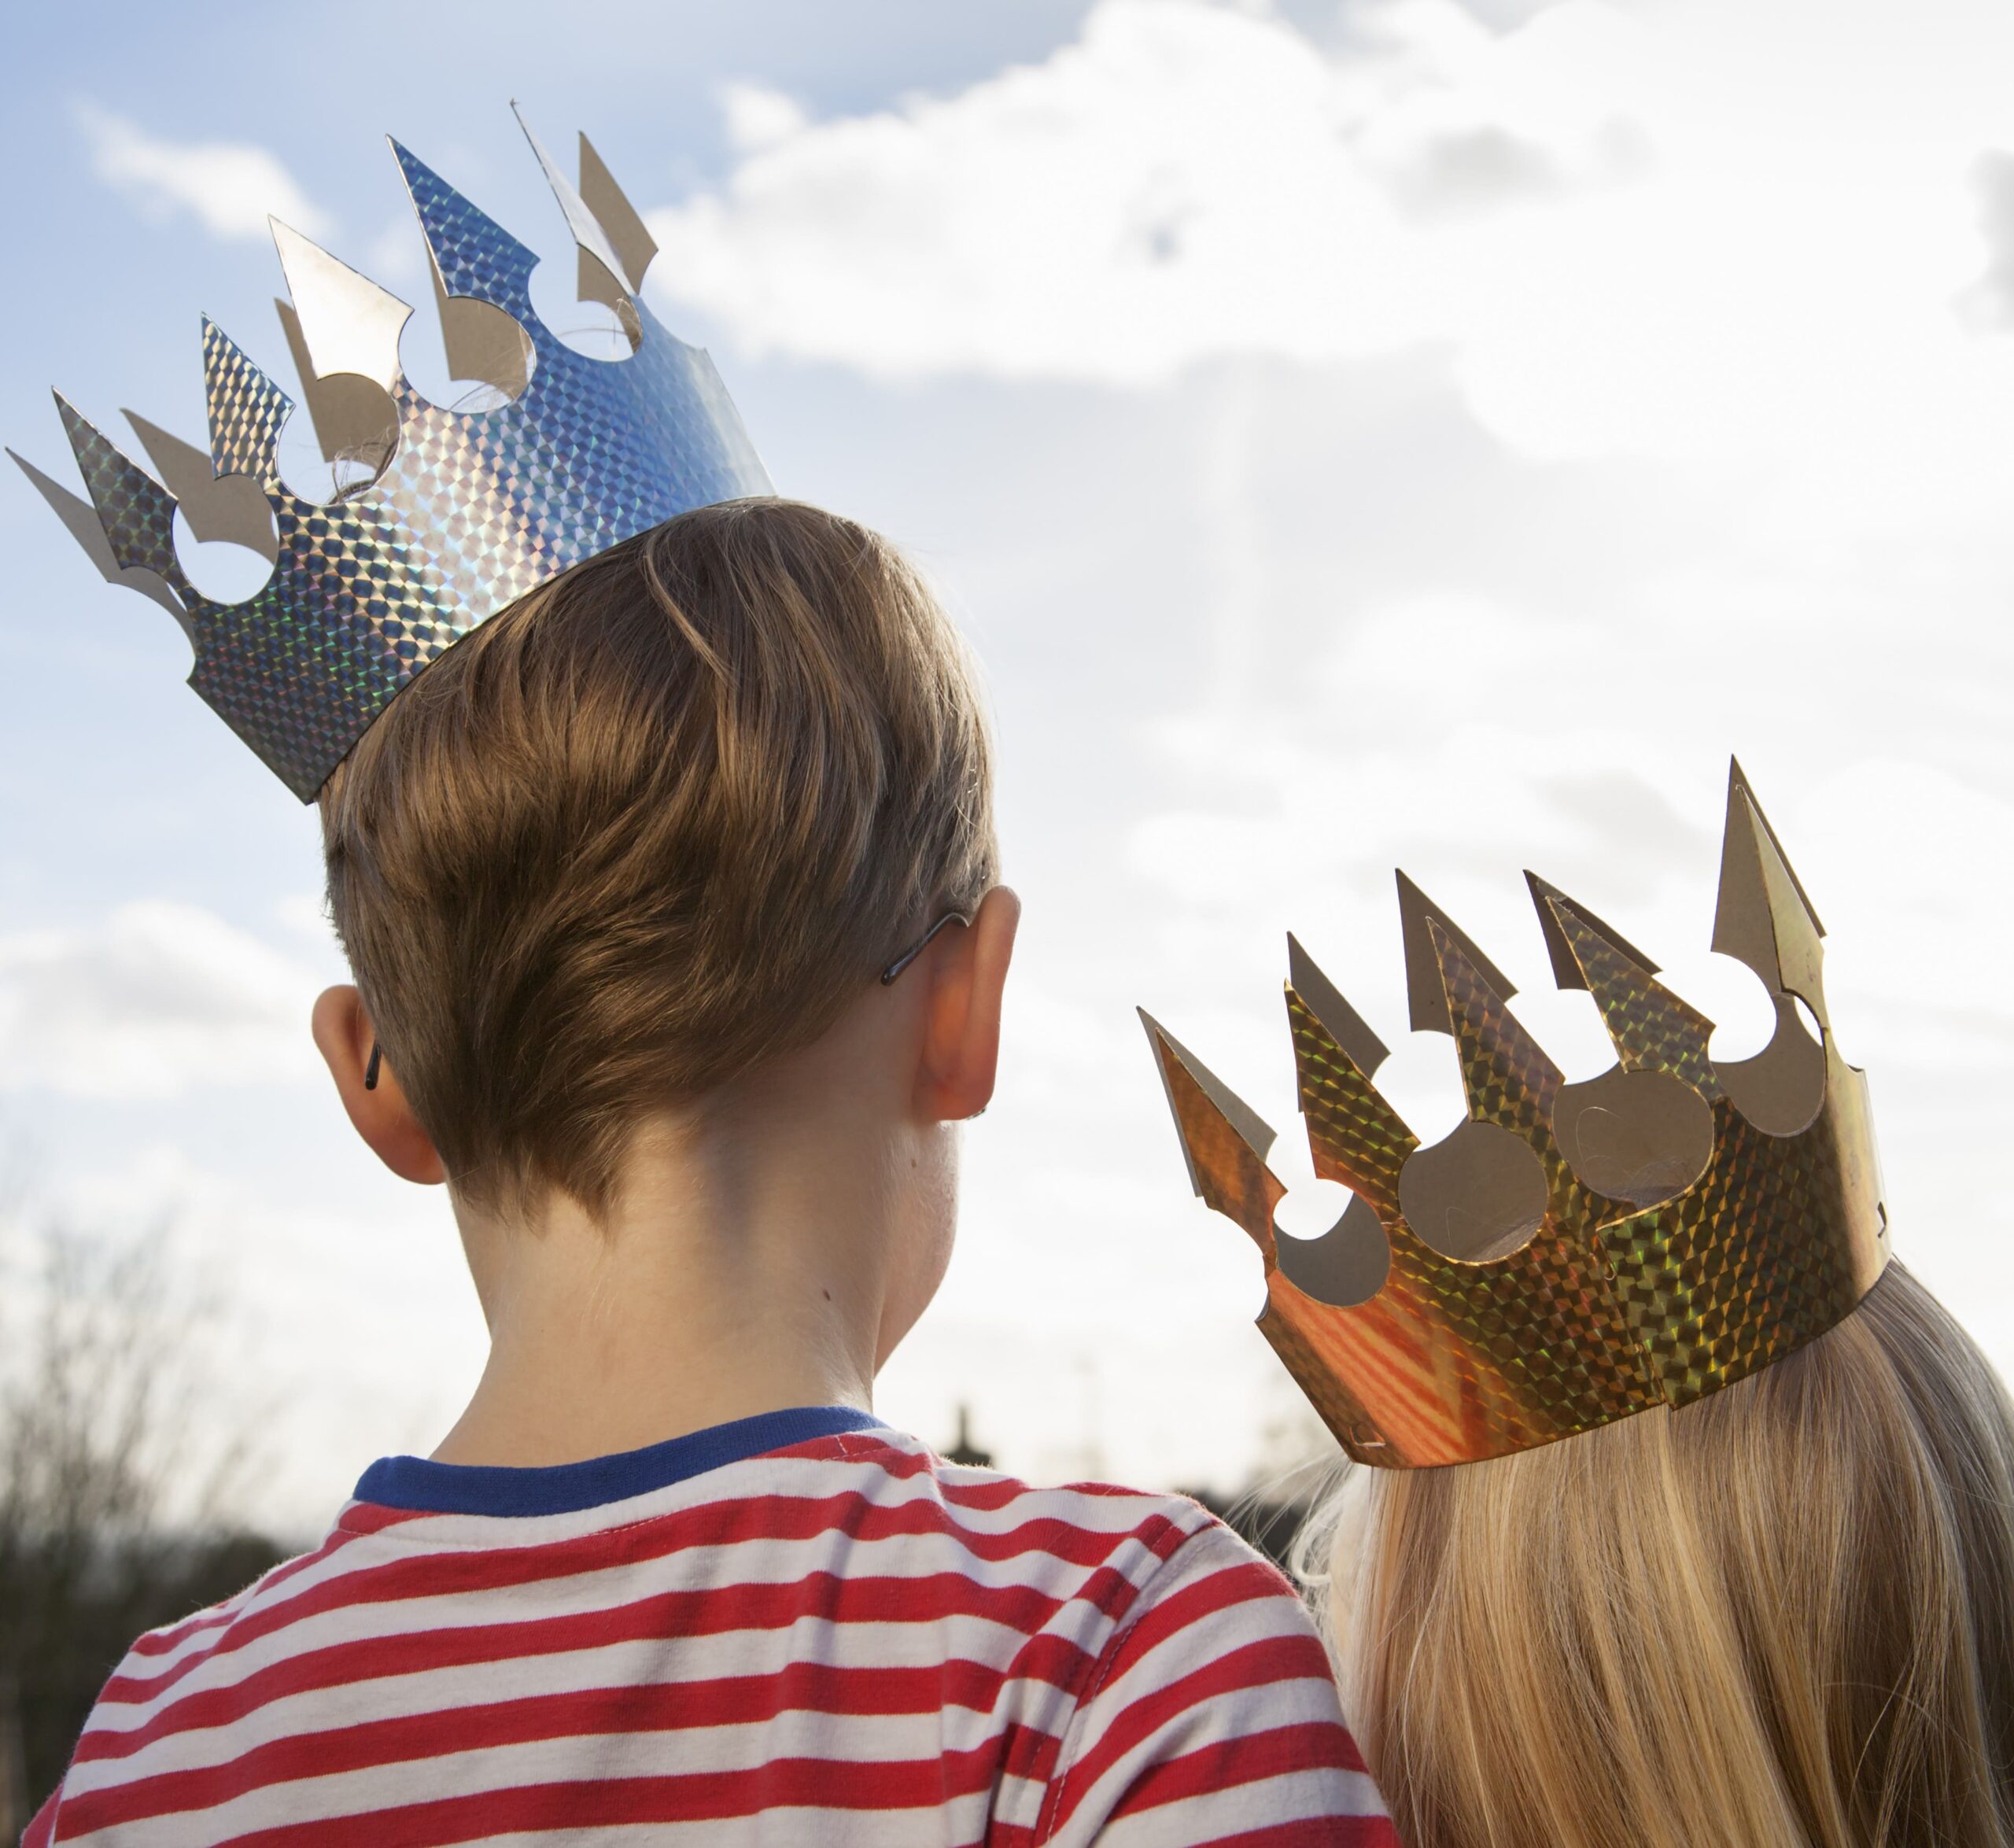 two-children-in-fancy-dress-wearing-crowns-2022-03-04-02-25-32-utc